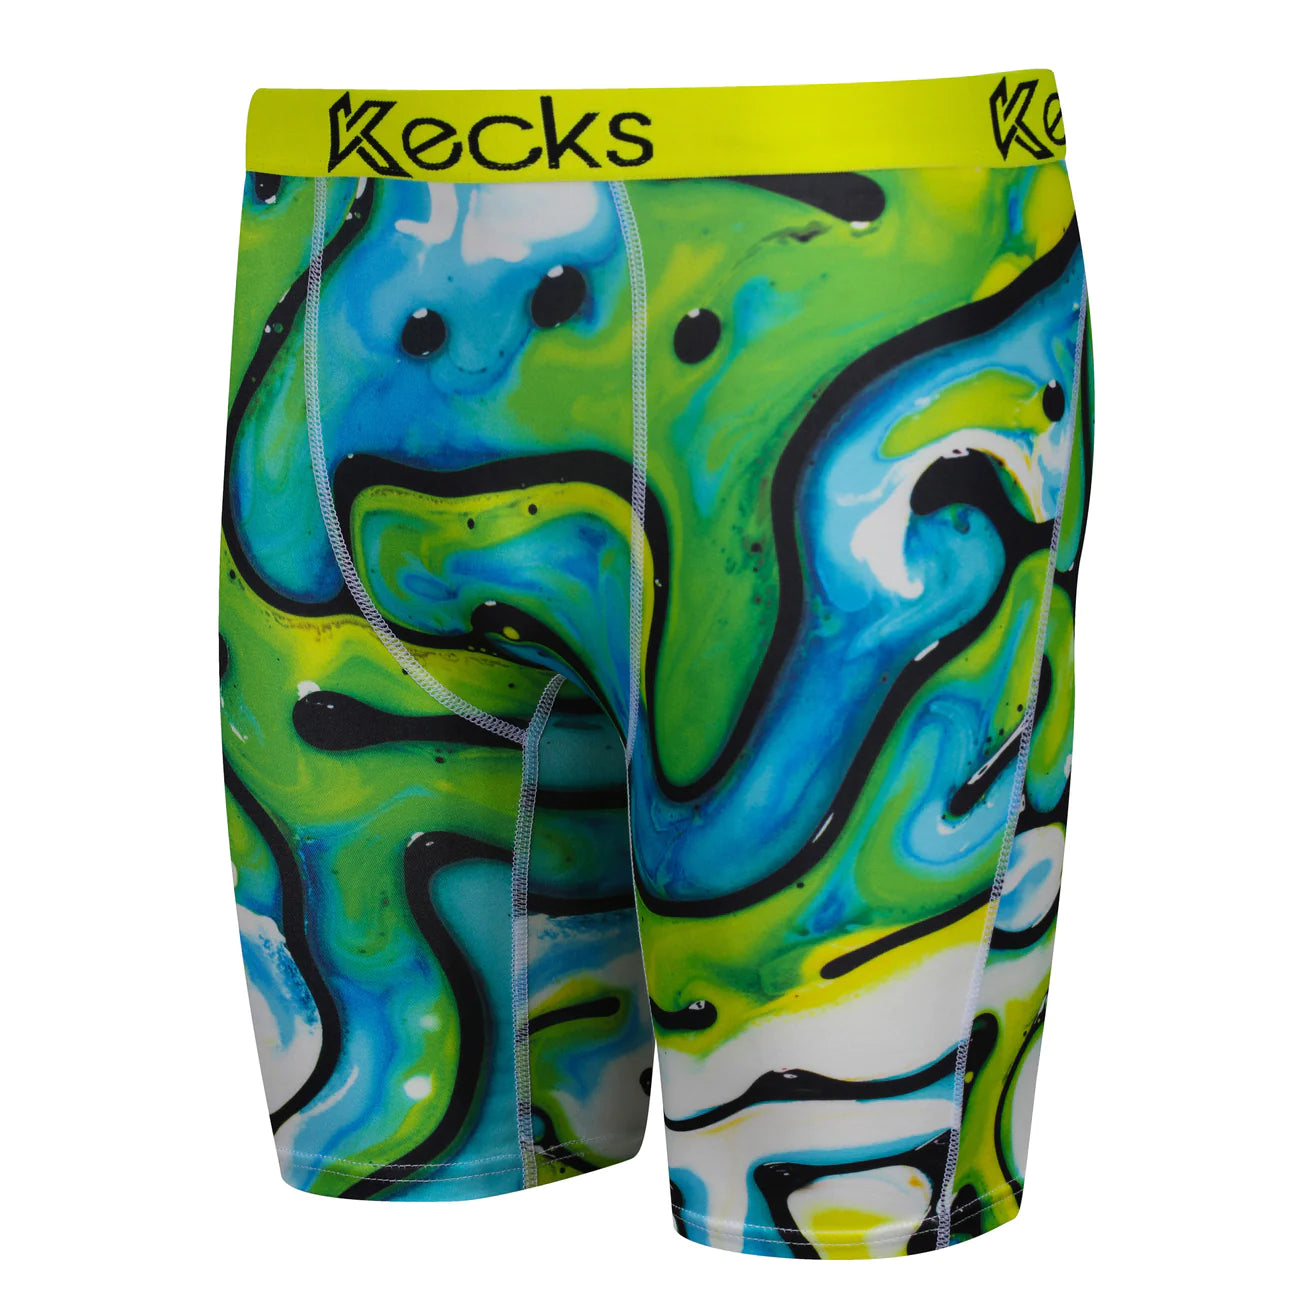 Kecks Lets Drip Print Boxer Shorts Underwear Boxer Shorts